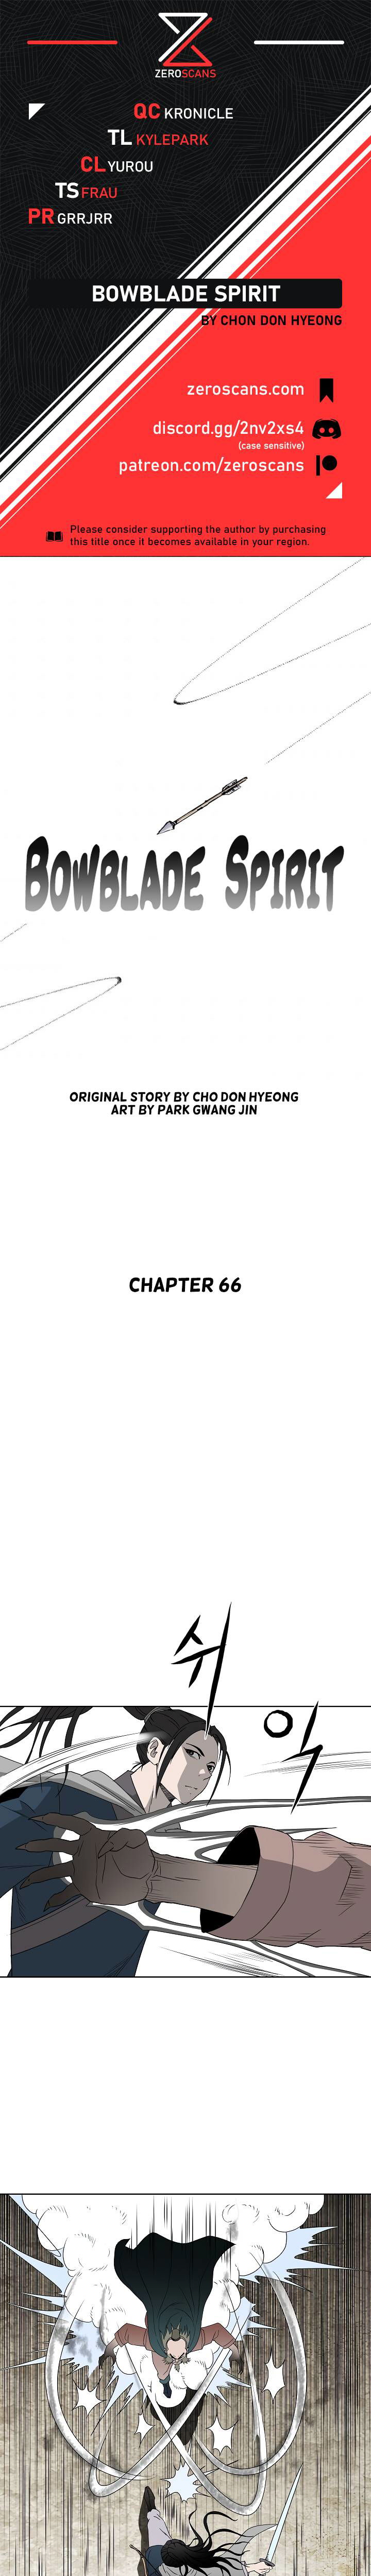 Bowblade Spirit Chapter 66 page 1